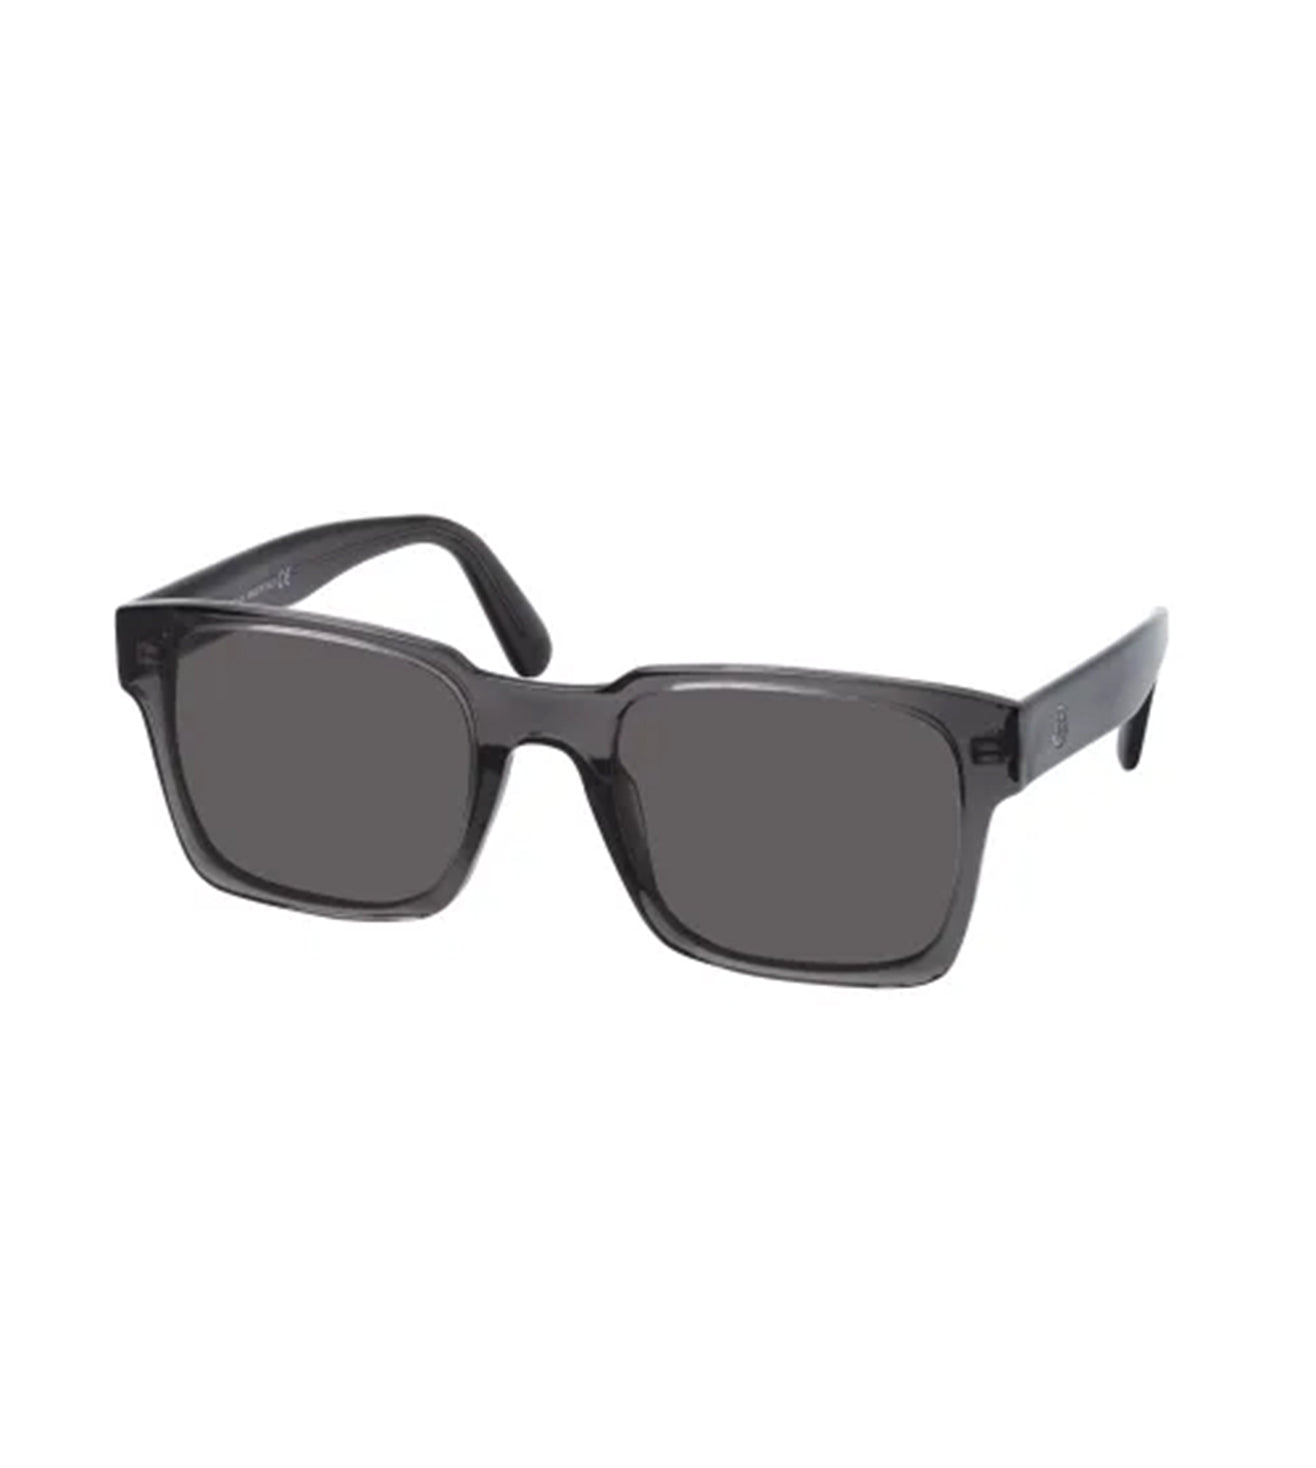 Square Shiny Black Sunglasses